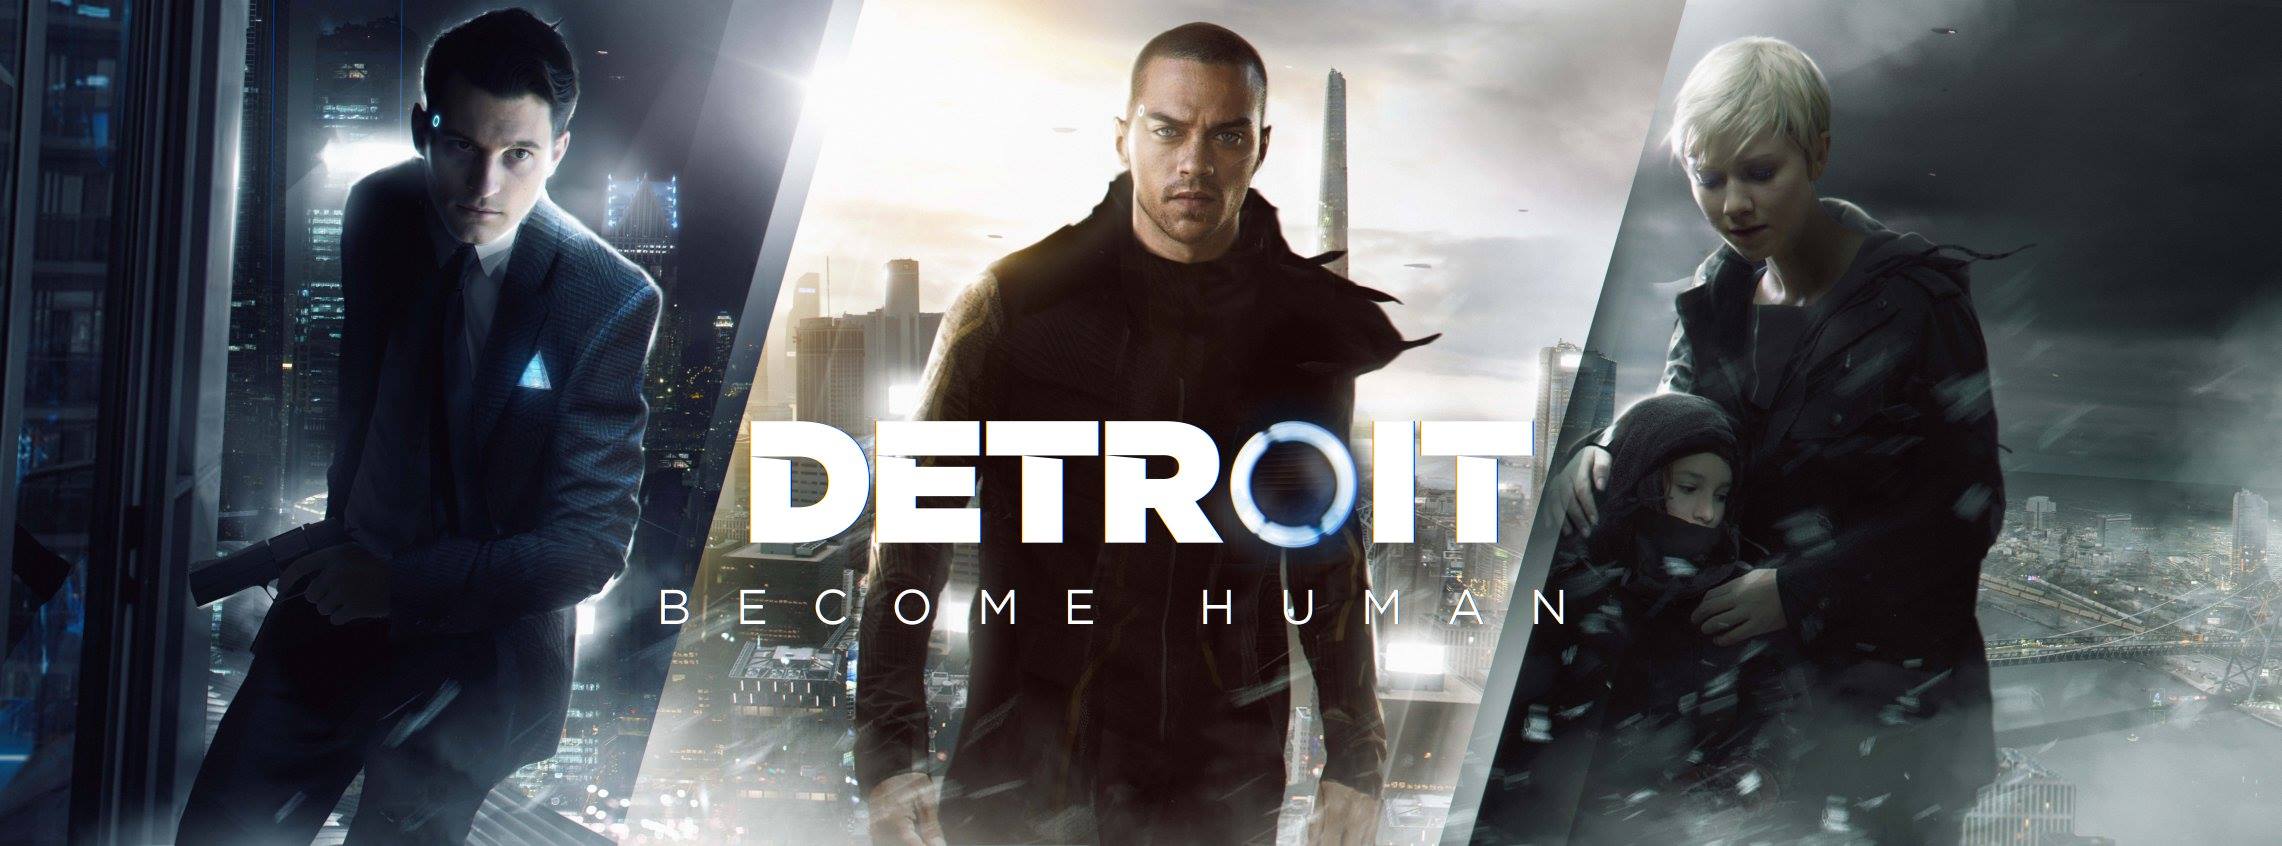 Detroit: Become Human – Neue Trailer zeigen uns die Protagonisten